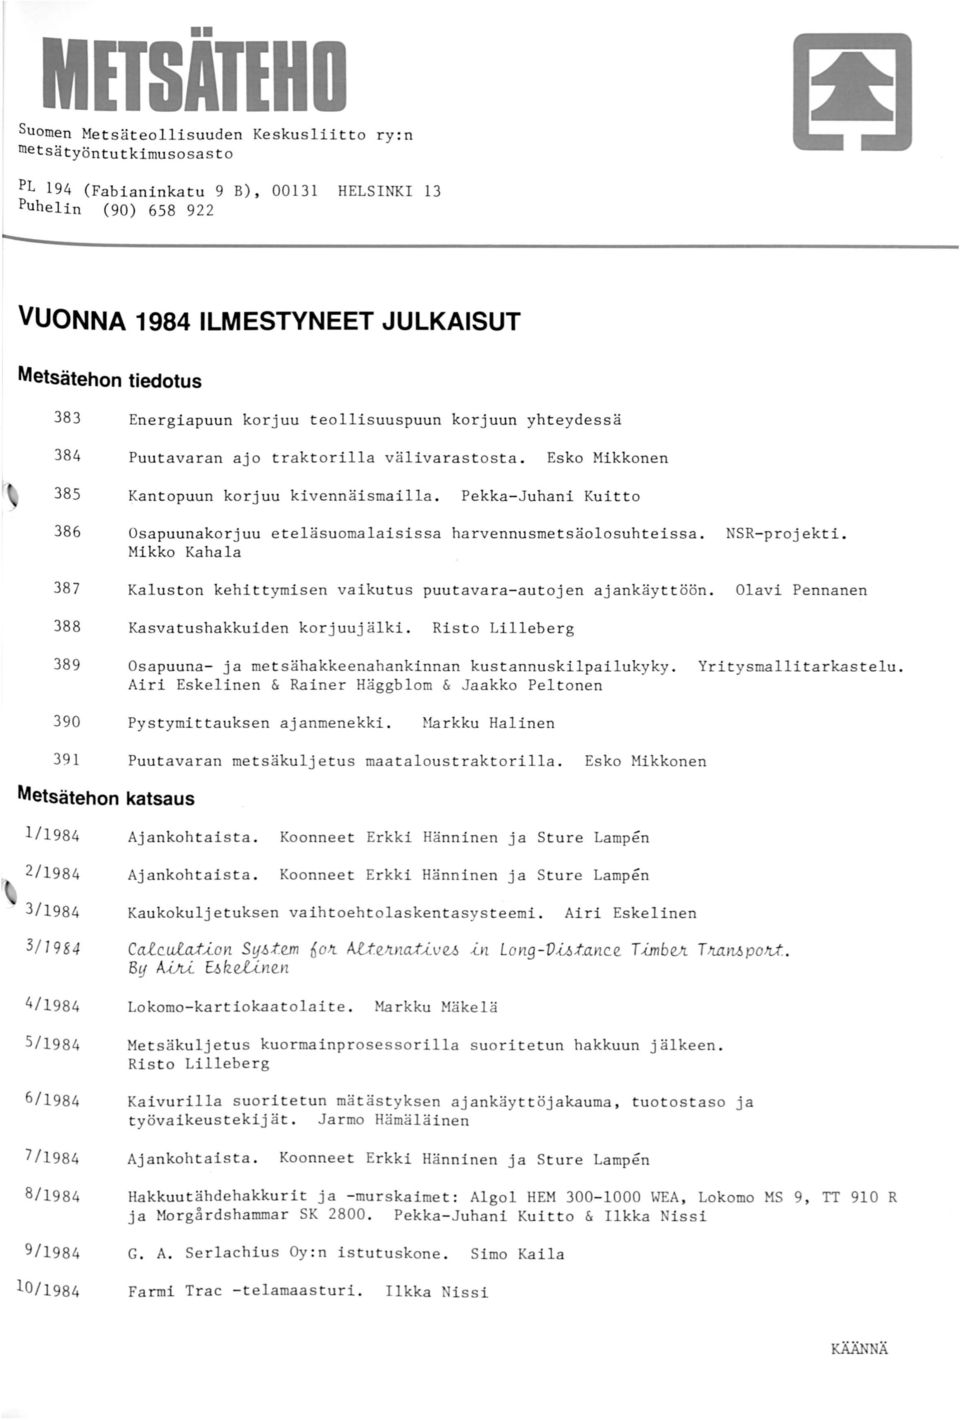 Pekka-Juhani Kuitto 386 Osapuunakorjuu eteläsuomalaisissa harvennusmet säolosuhteissa. NSR- projekti. Mikko Kahala 387 Kaluston kehittymisen vaikutus puutavara- autojen ajankäyttöön.